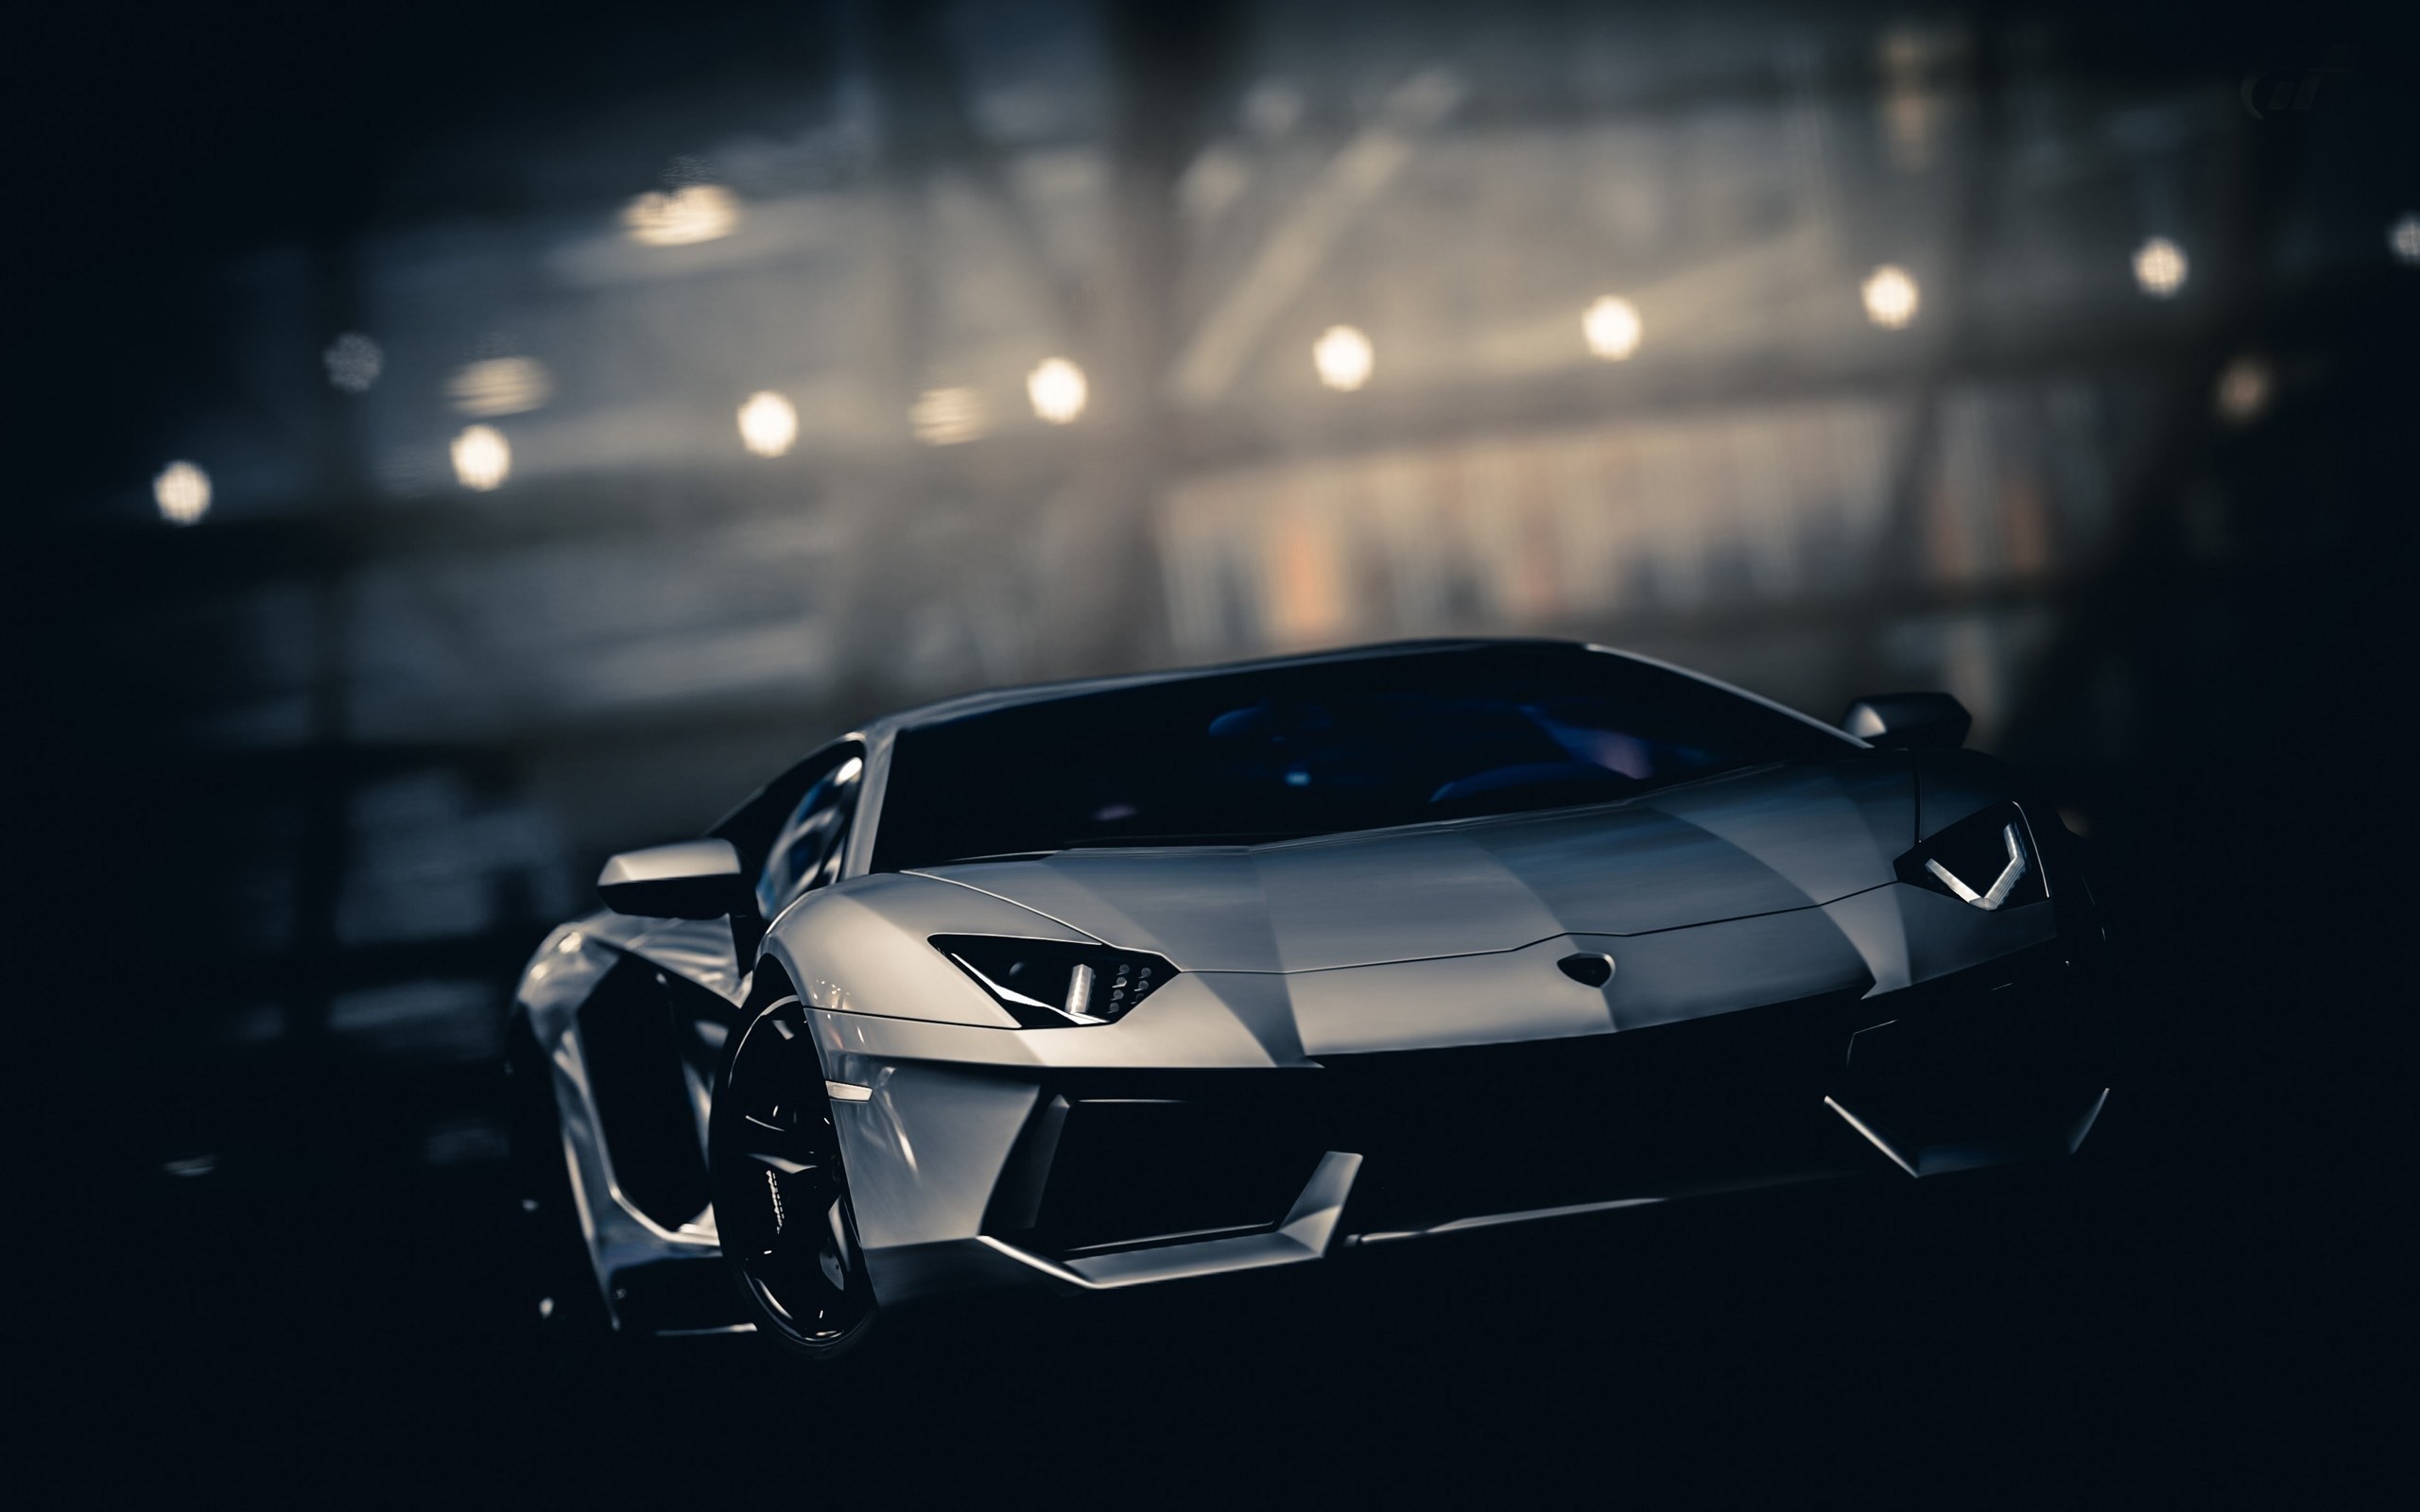 Lamborghini Aventador, Hypercar, Mid engine, Italian Cars Wallpaper